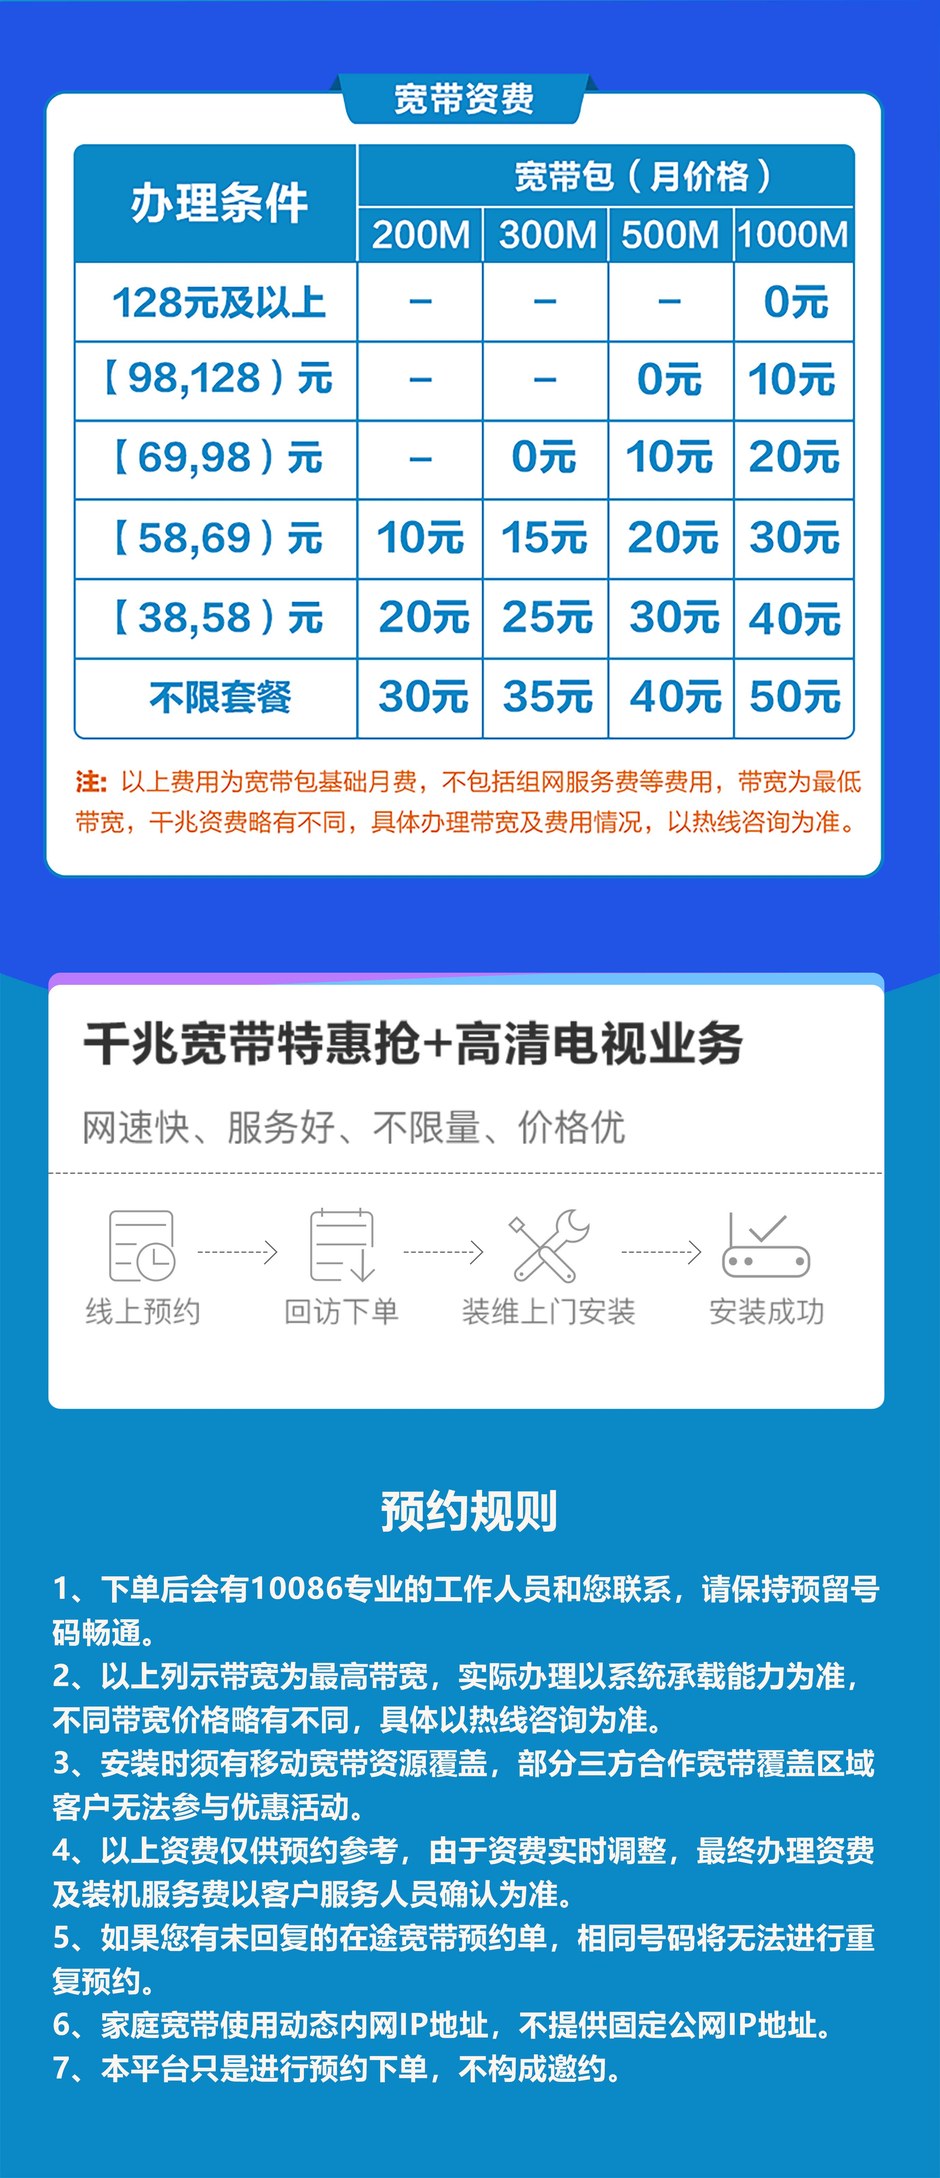 哈尔滨市移动宽带包月套餐价格表图片